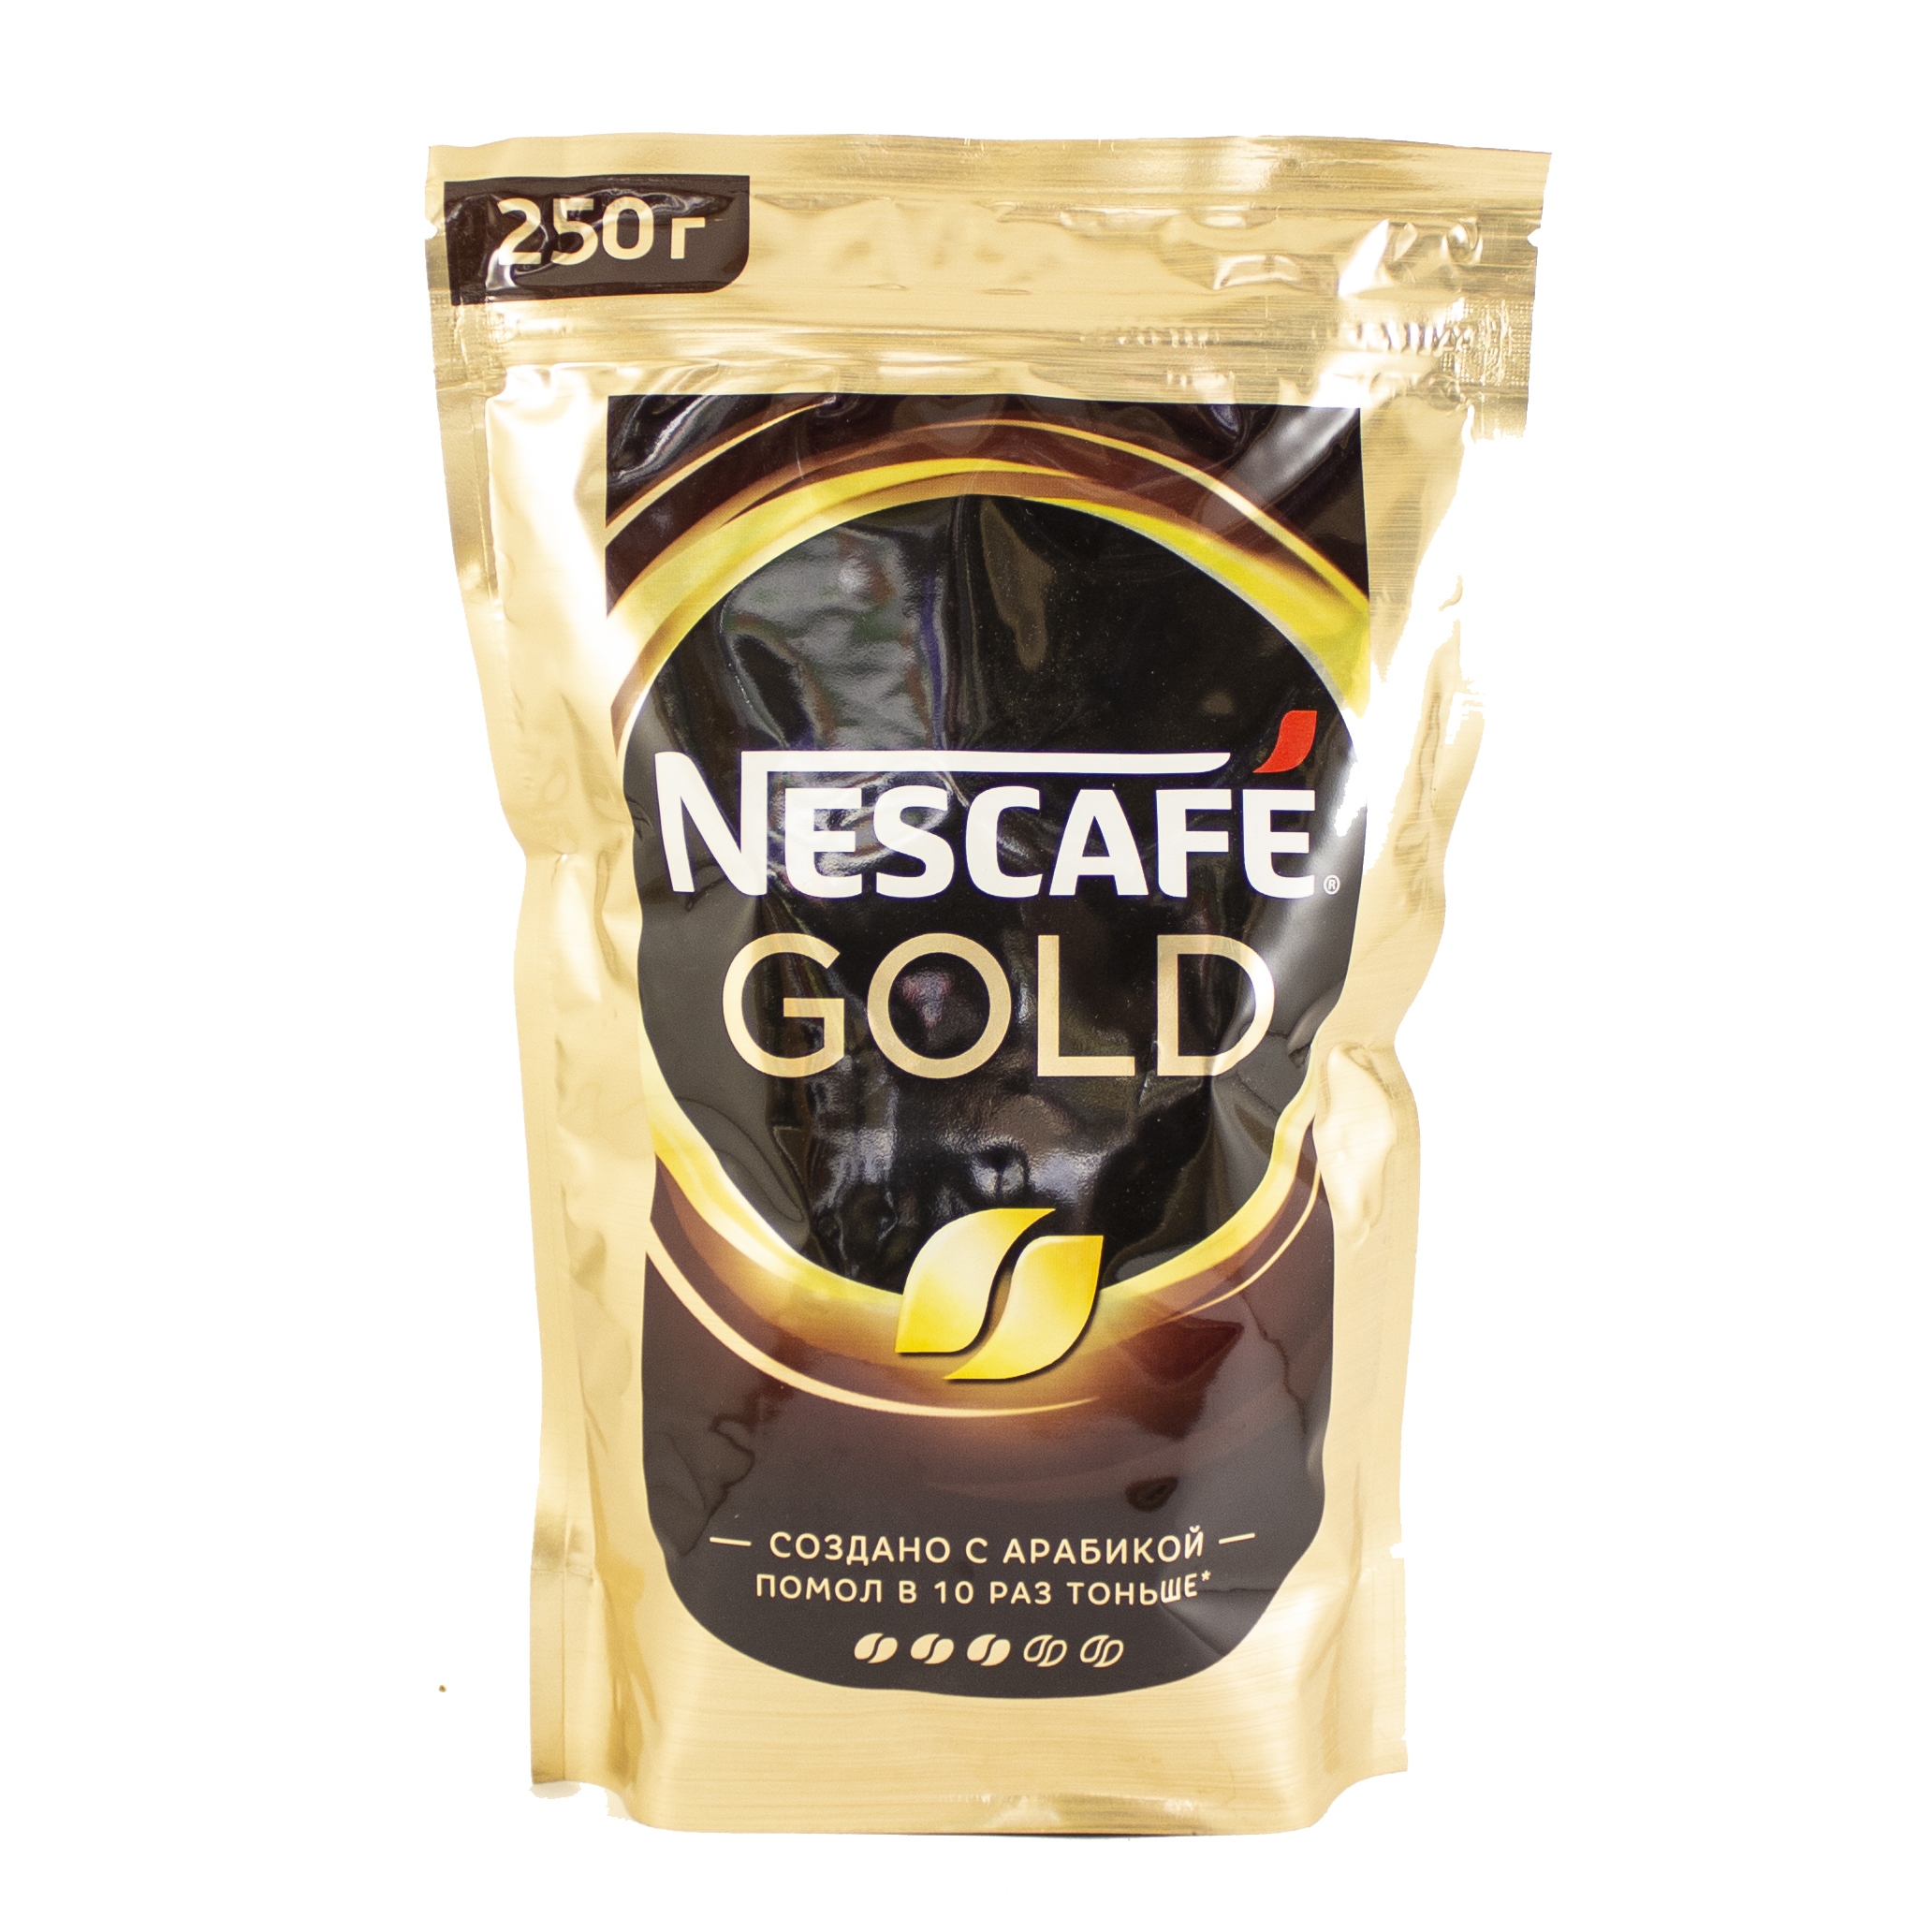 Купить кофе голд 500 гр. Кофе Нескафе Голд 220г пакет. Нескафе Голд 220 грамм. Кофе Nescafe Gold 220 г. Кофе Nescafe Gold растворимый 220г.